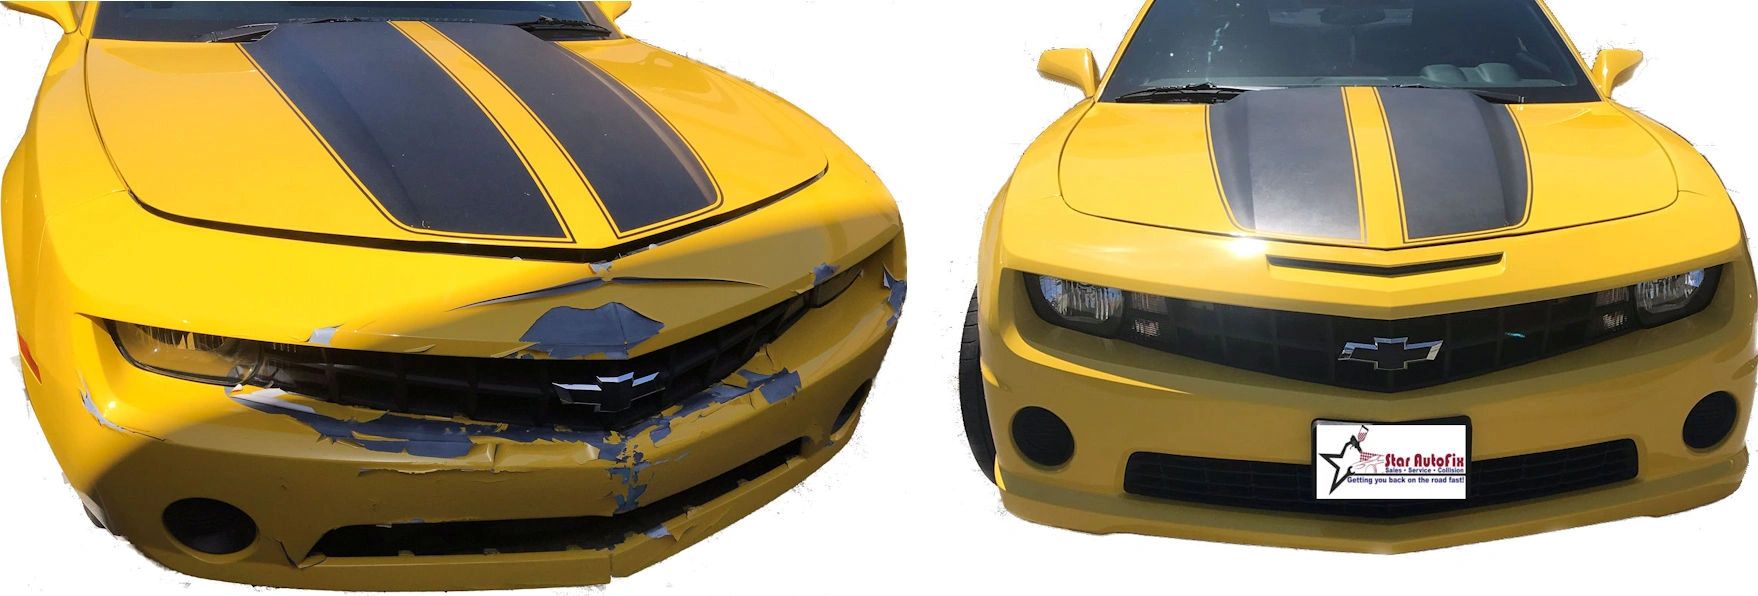 Star Auto Fix - Collision Repair, Auto Body Shop, Auto Body Repair